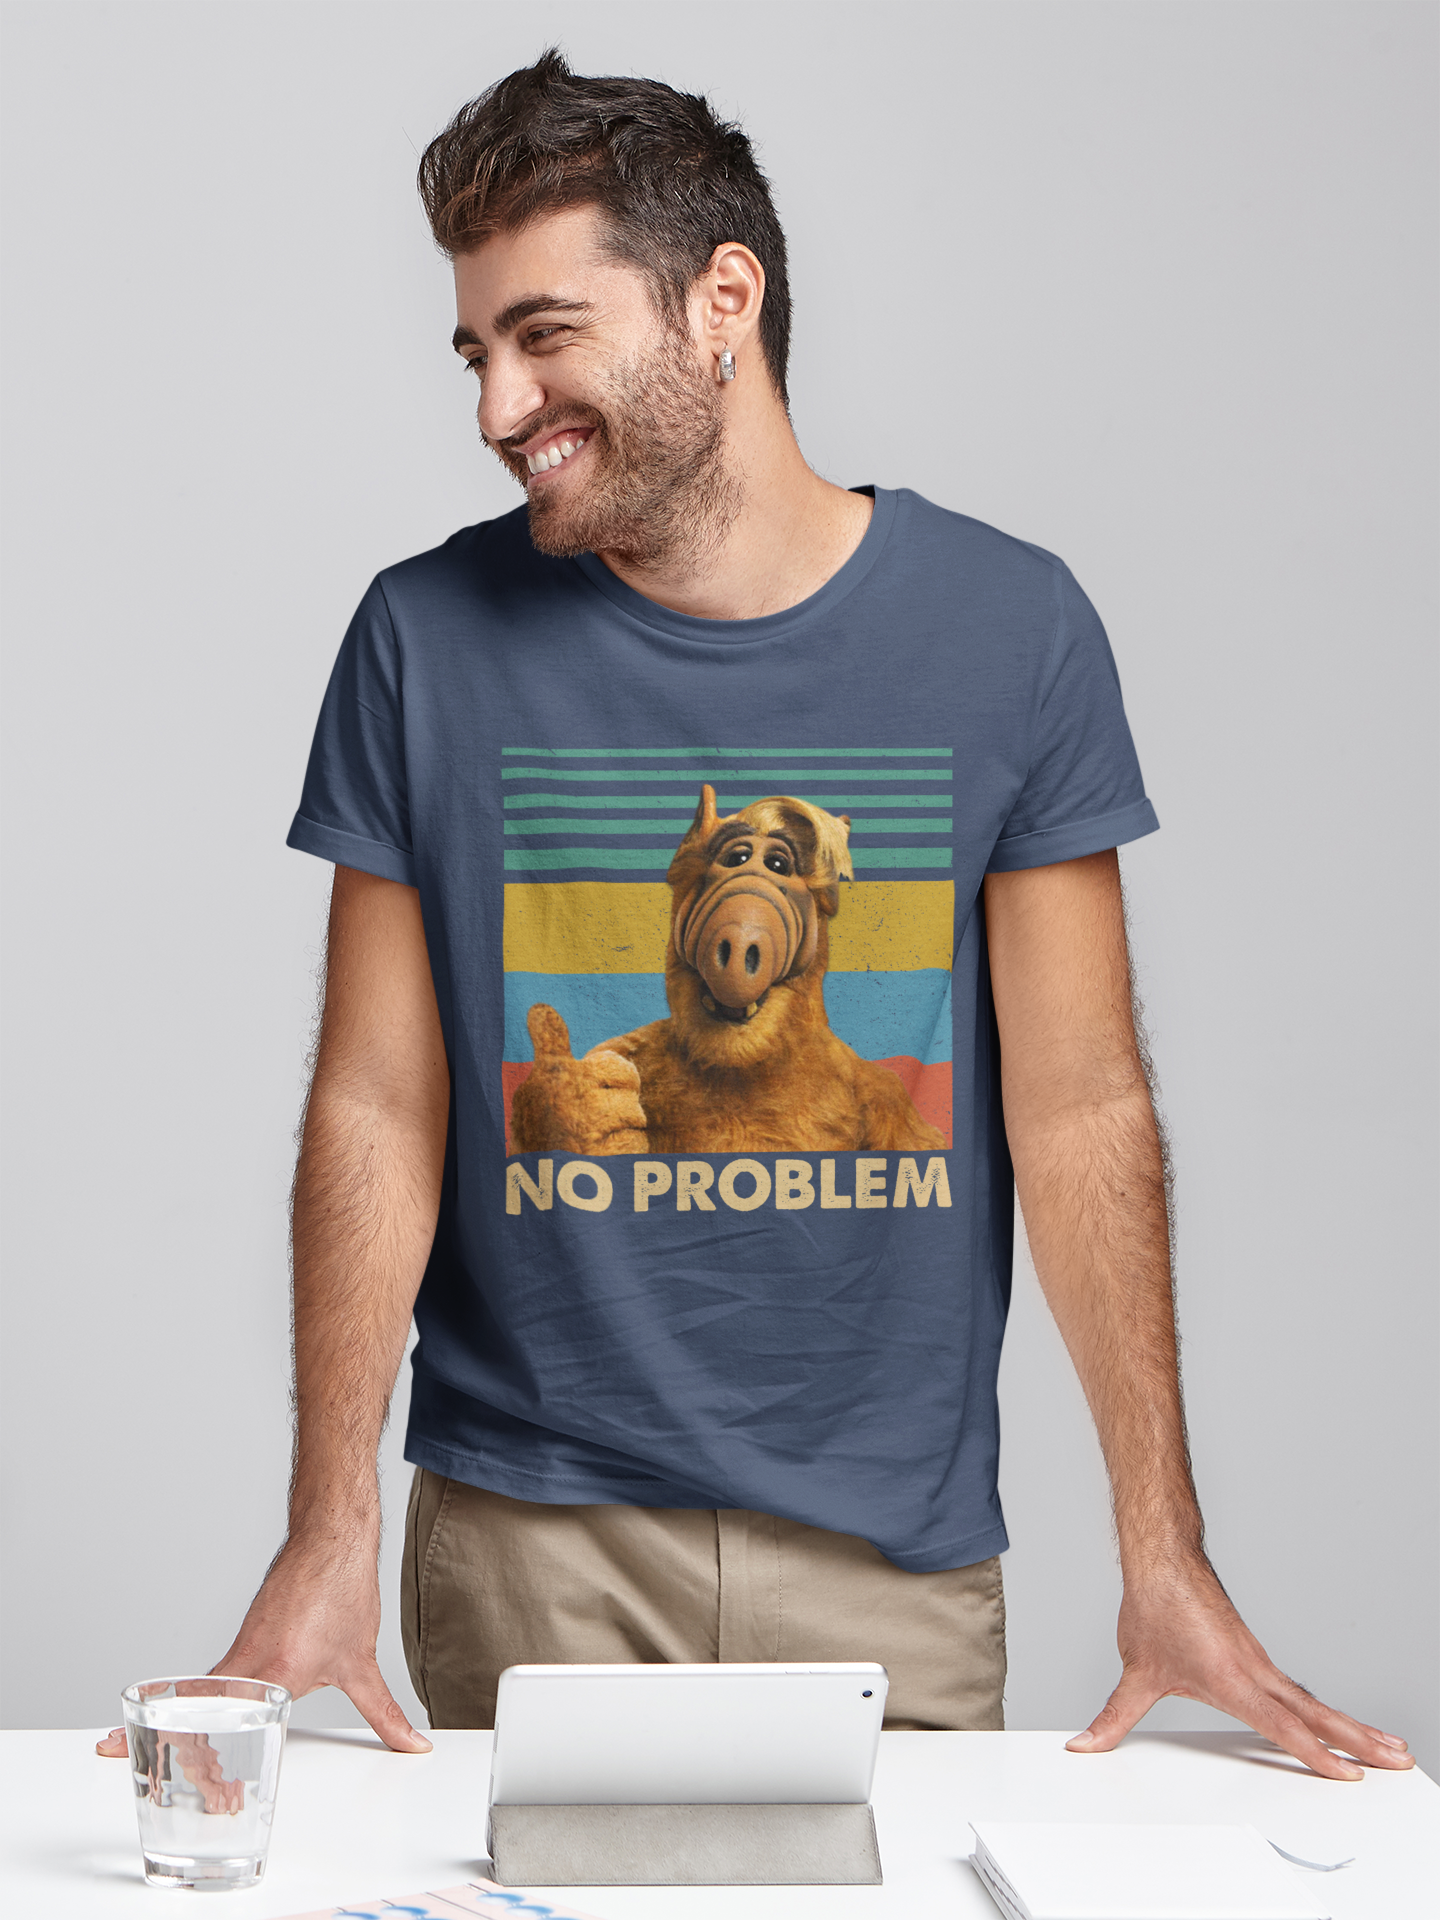 ALF Movie Vintage T Shirt, ALF T Shirt, No Problem Tshirt